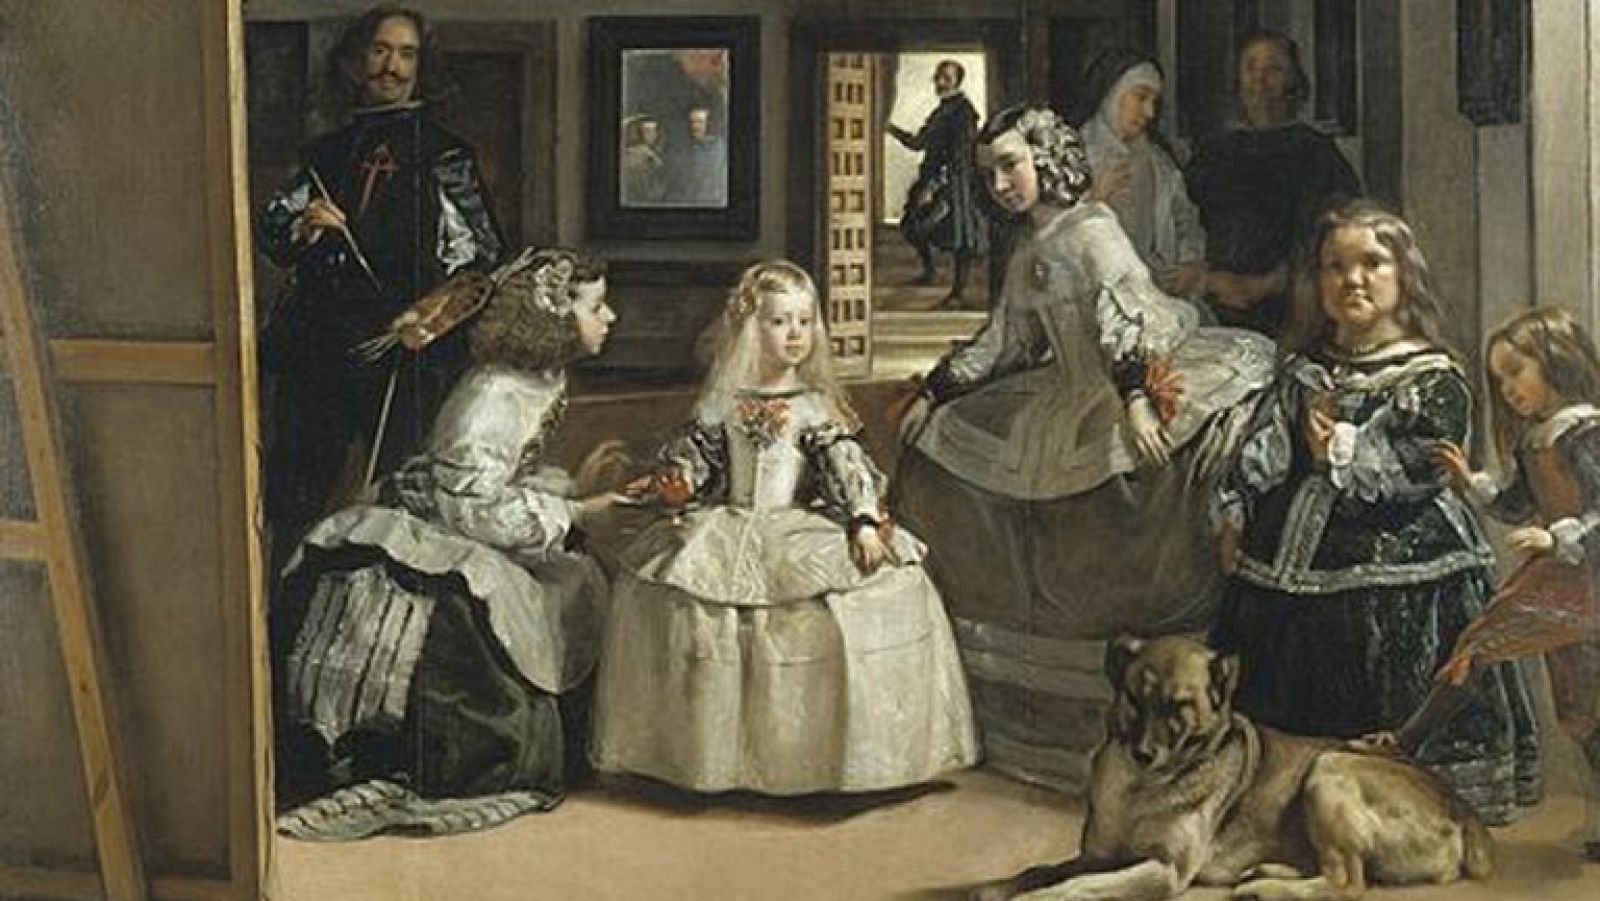 Mirar un cuadro - Las meninas (Velázquez)